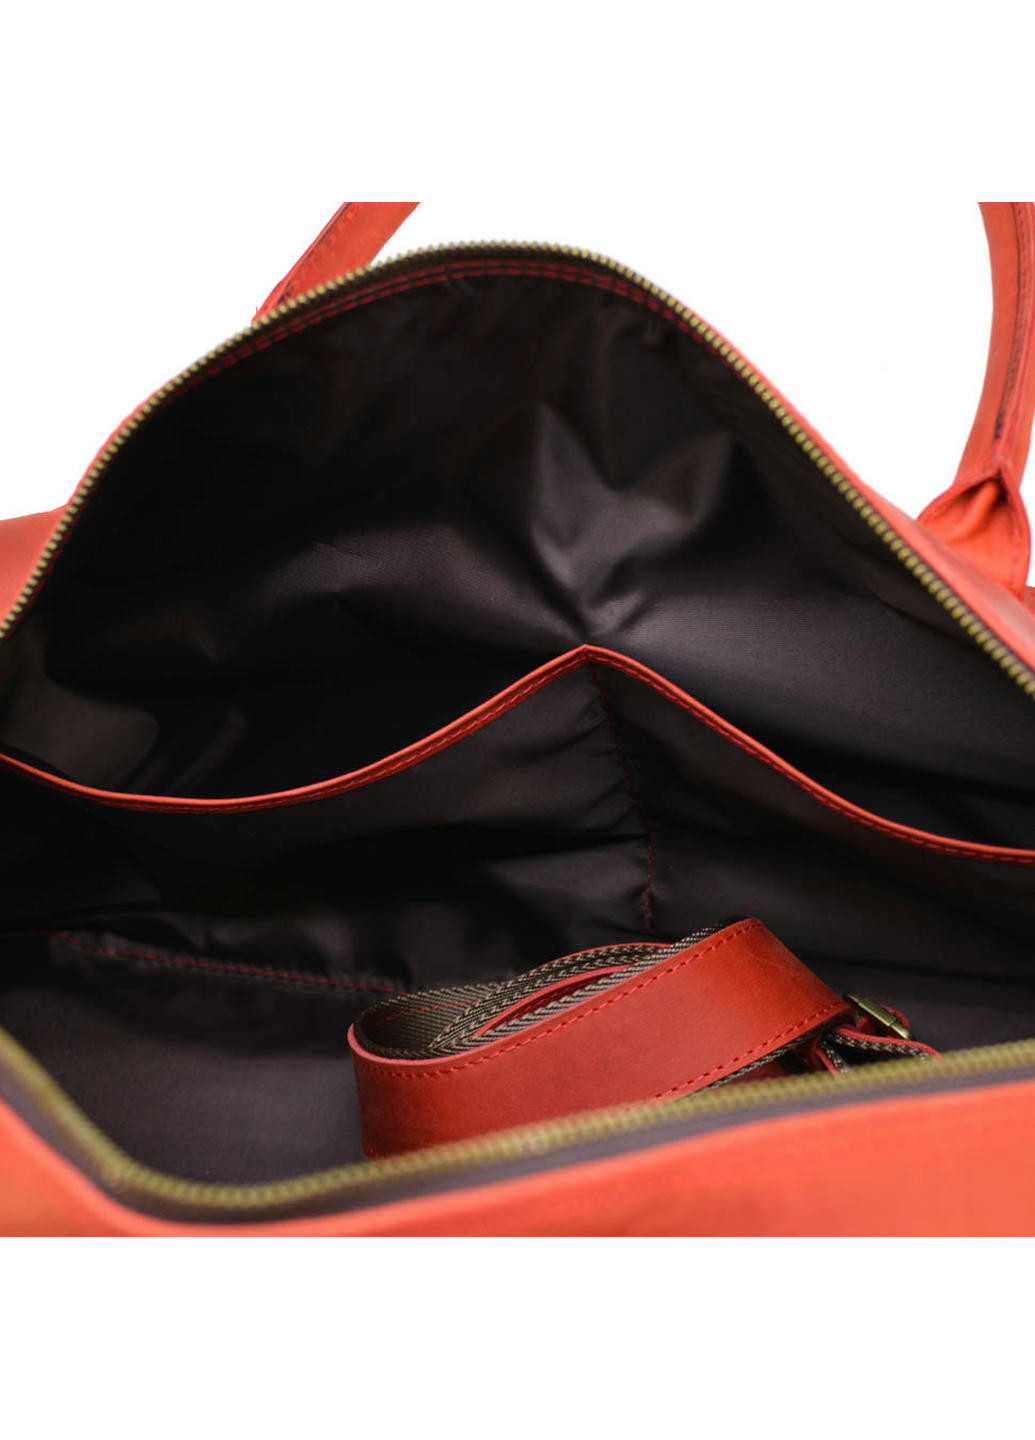 Дорожная кожаная сумка красная RR-5664-4lx TARWA (257657248)